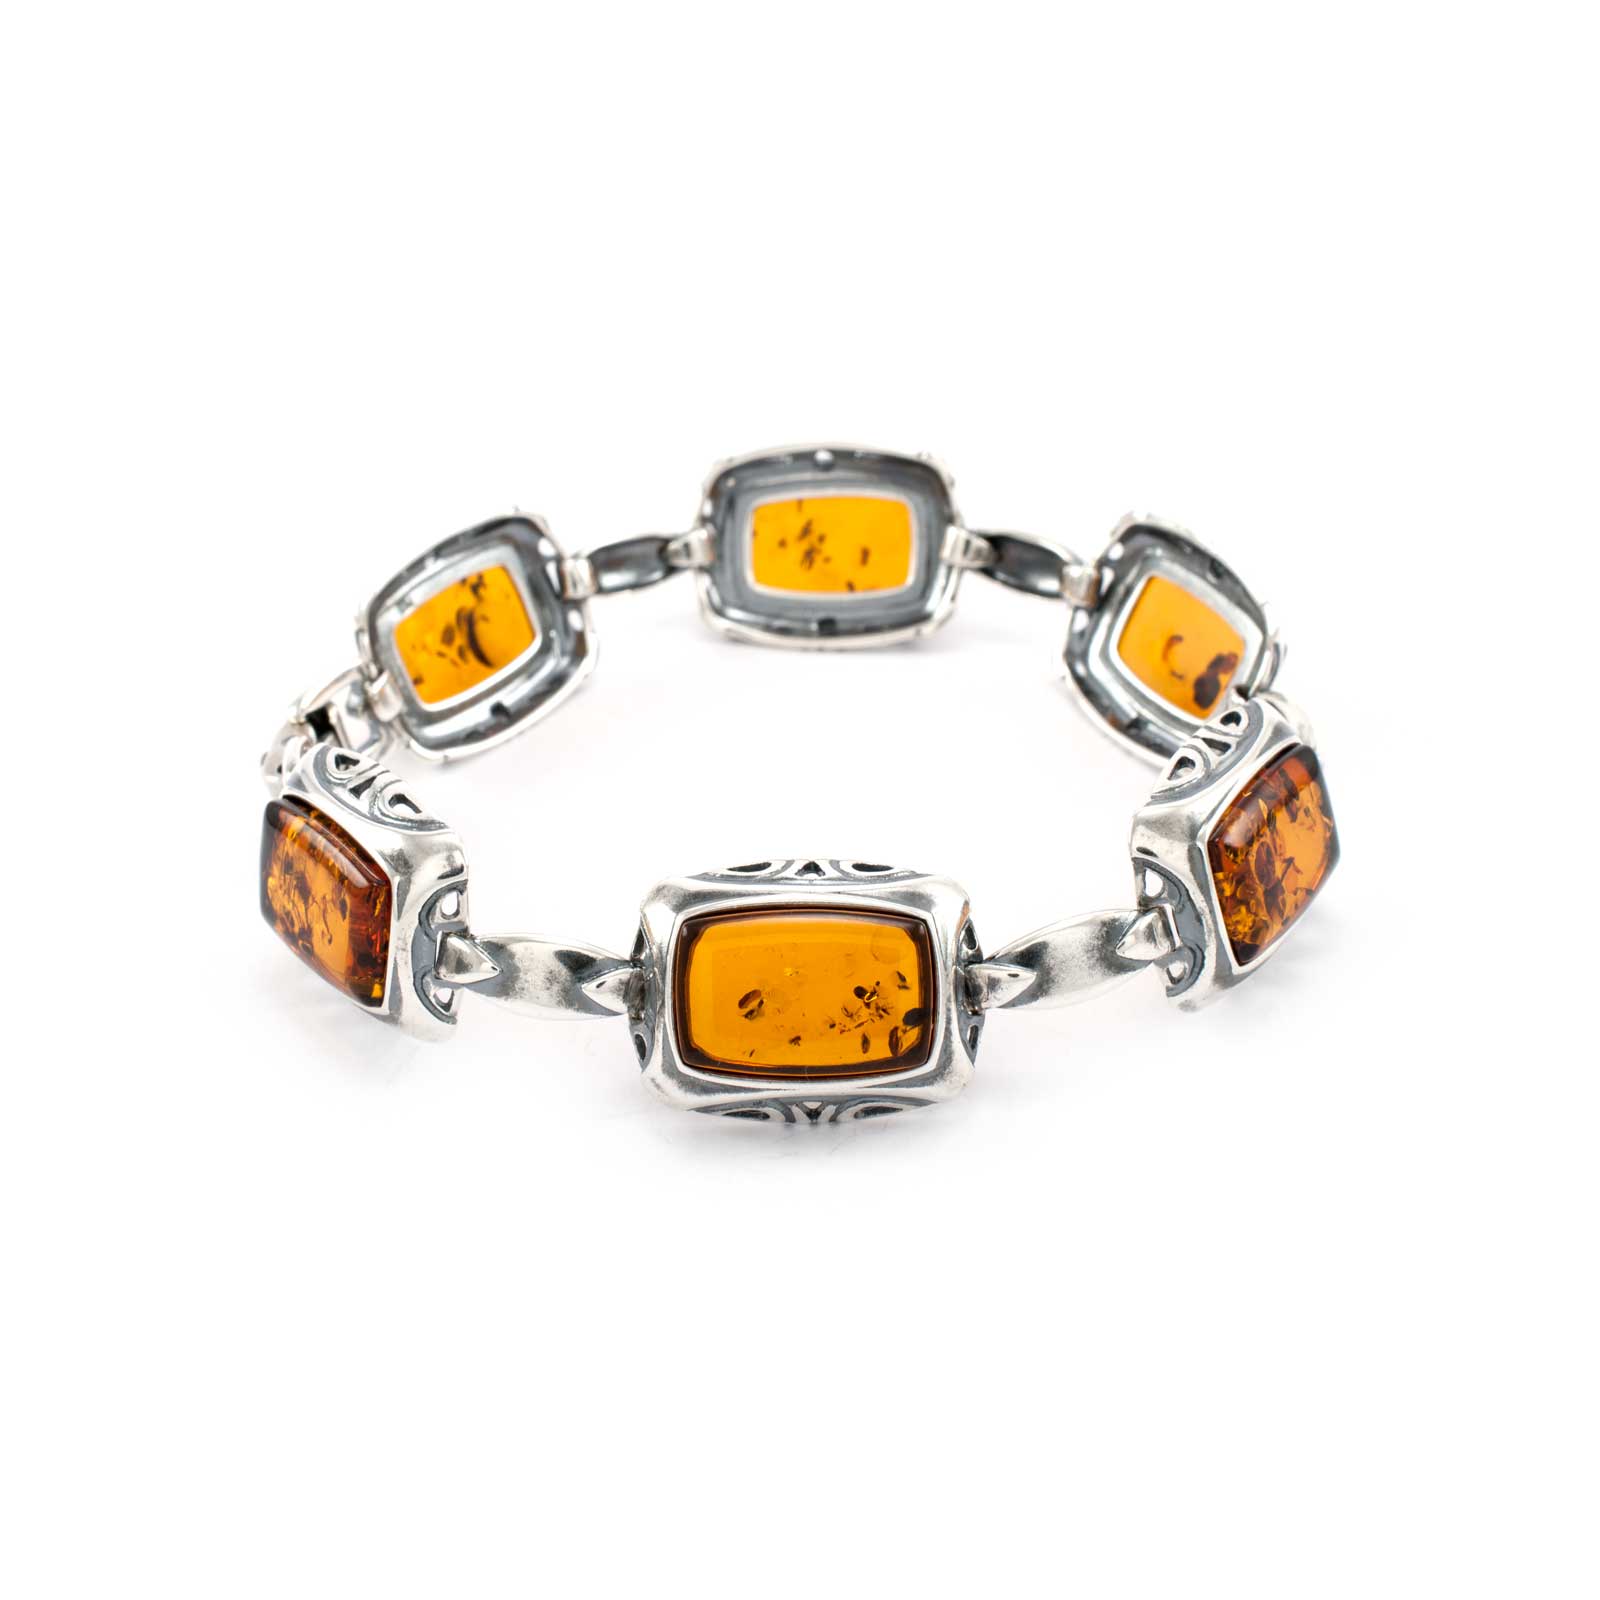 Amber cognac bracelet  Genuine amber bracelet  Raw amber bracelet  Ball bracelet  Amber bracelet for women  Small amber bracelet